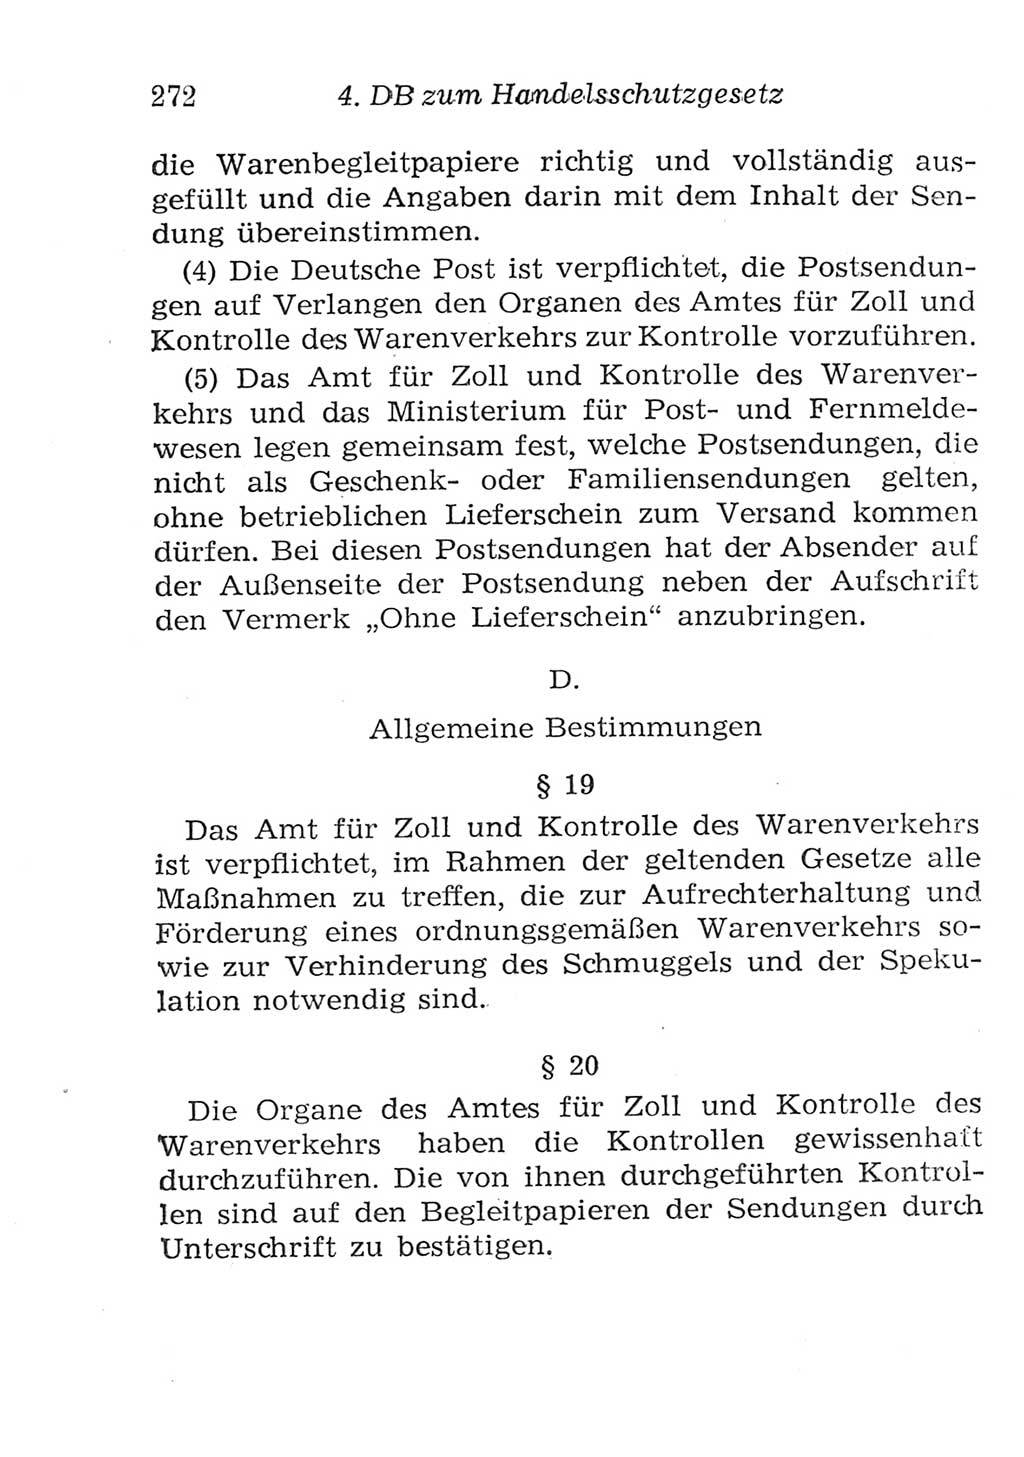 Strafgesetzbuch (StGB) und andere Strafgesetze [Deutsche Demokratische Republik (DDR)] 1957, Seite 272 (StGB Strafges. DDR 1957, S. 272)